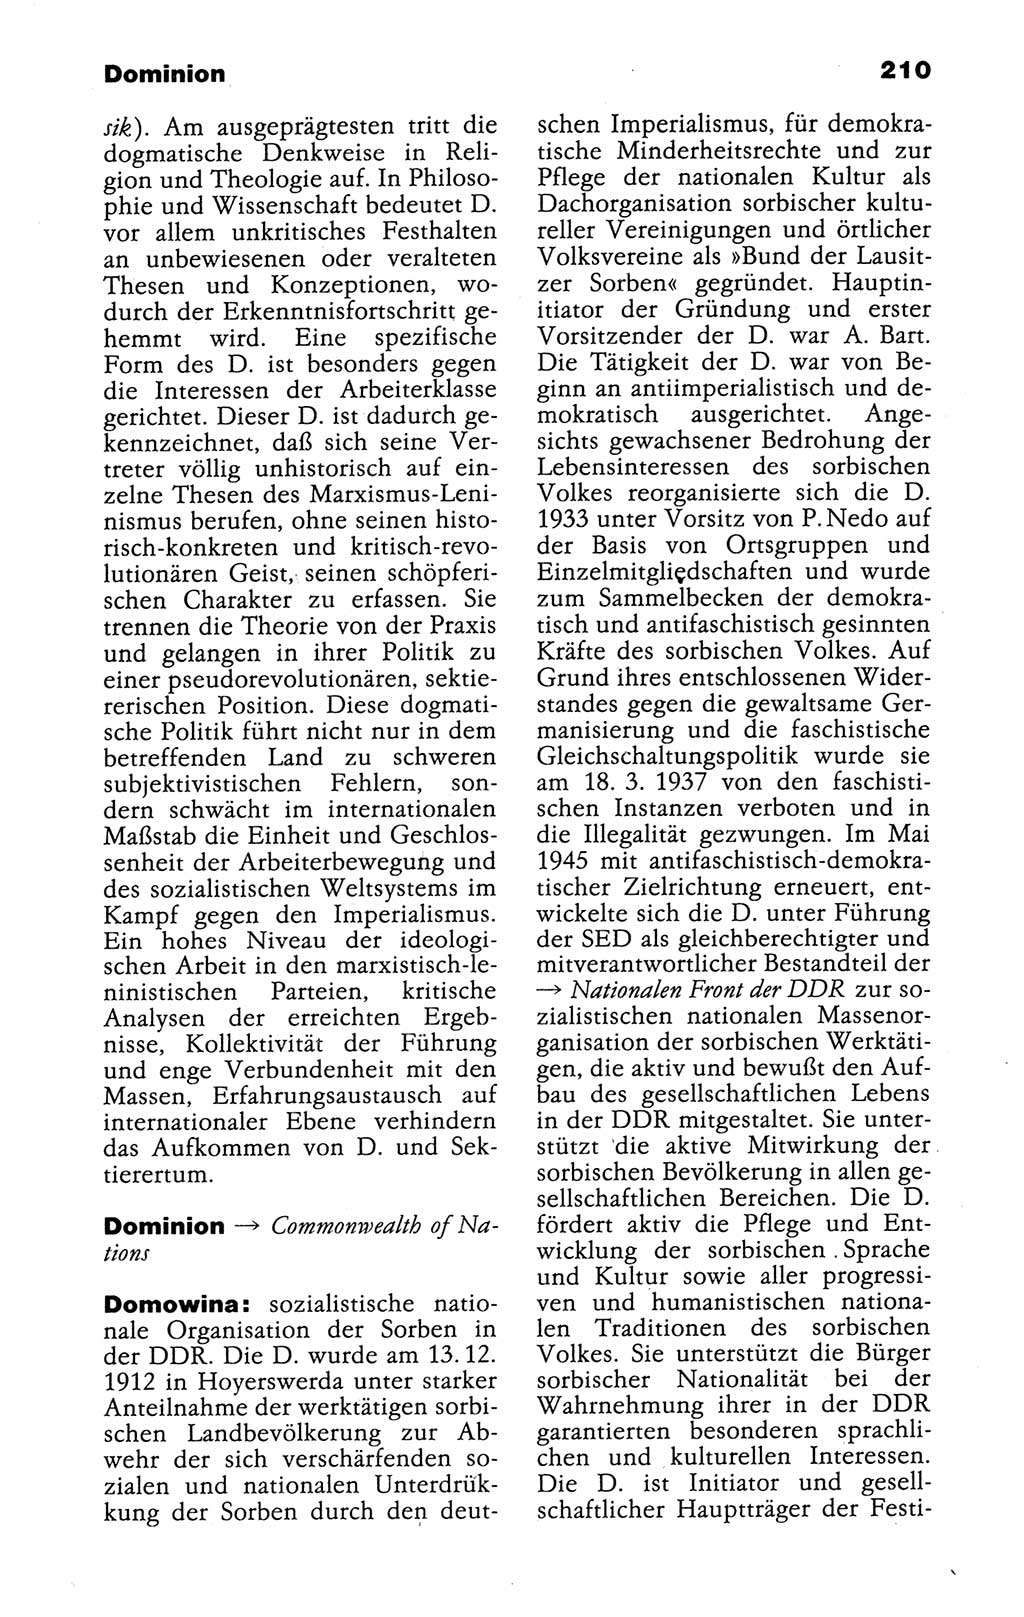 Kleines politisches Wörterbuch [Deutsche Demokratische Republik (DDR)] 1988, Seite 210 (Kl. pol. Wb. DDR 1988, S. 210)